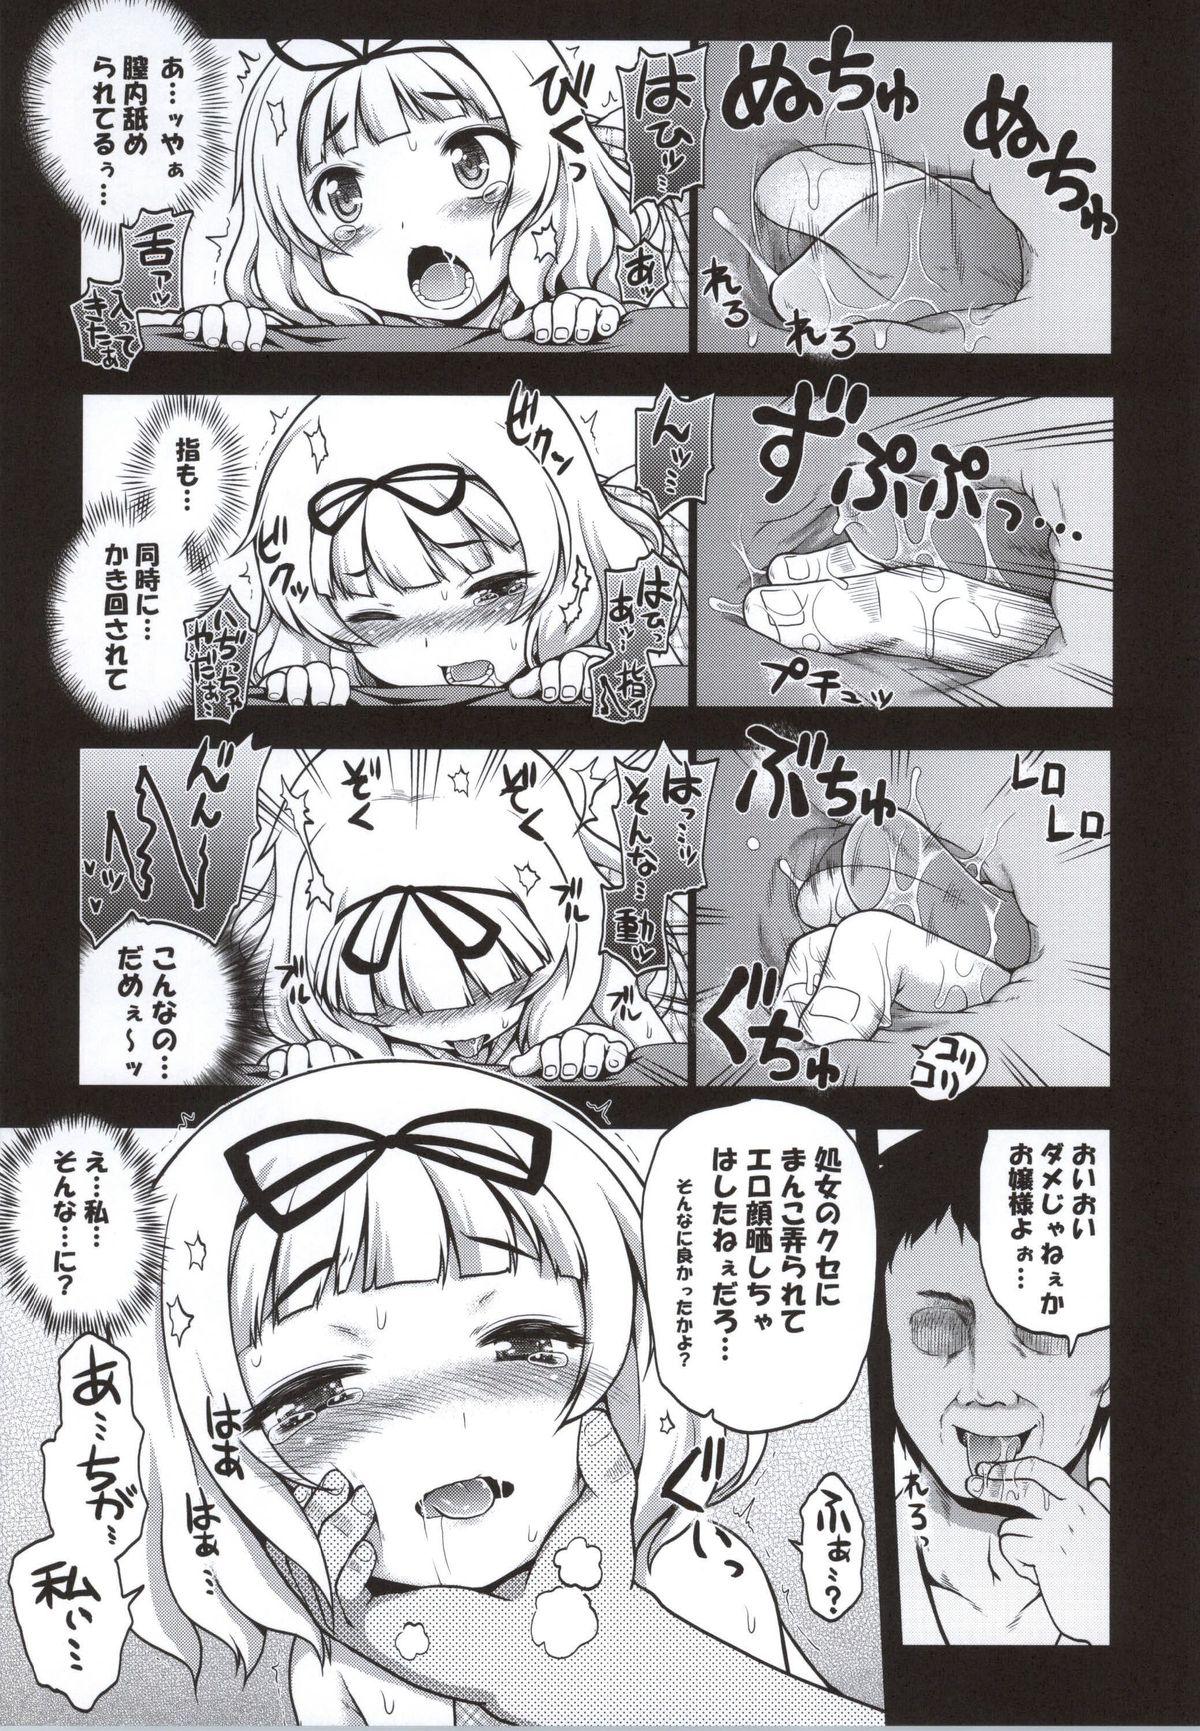 Bitch Ochi Usa - Gochuumon wa usagi desu ka Nylon - Page 10